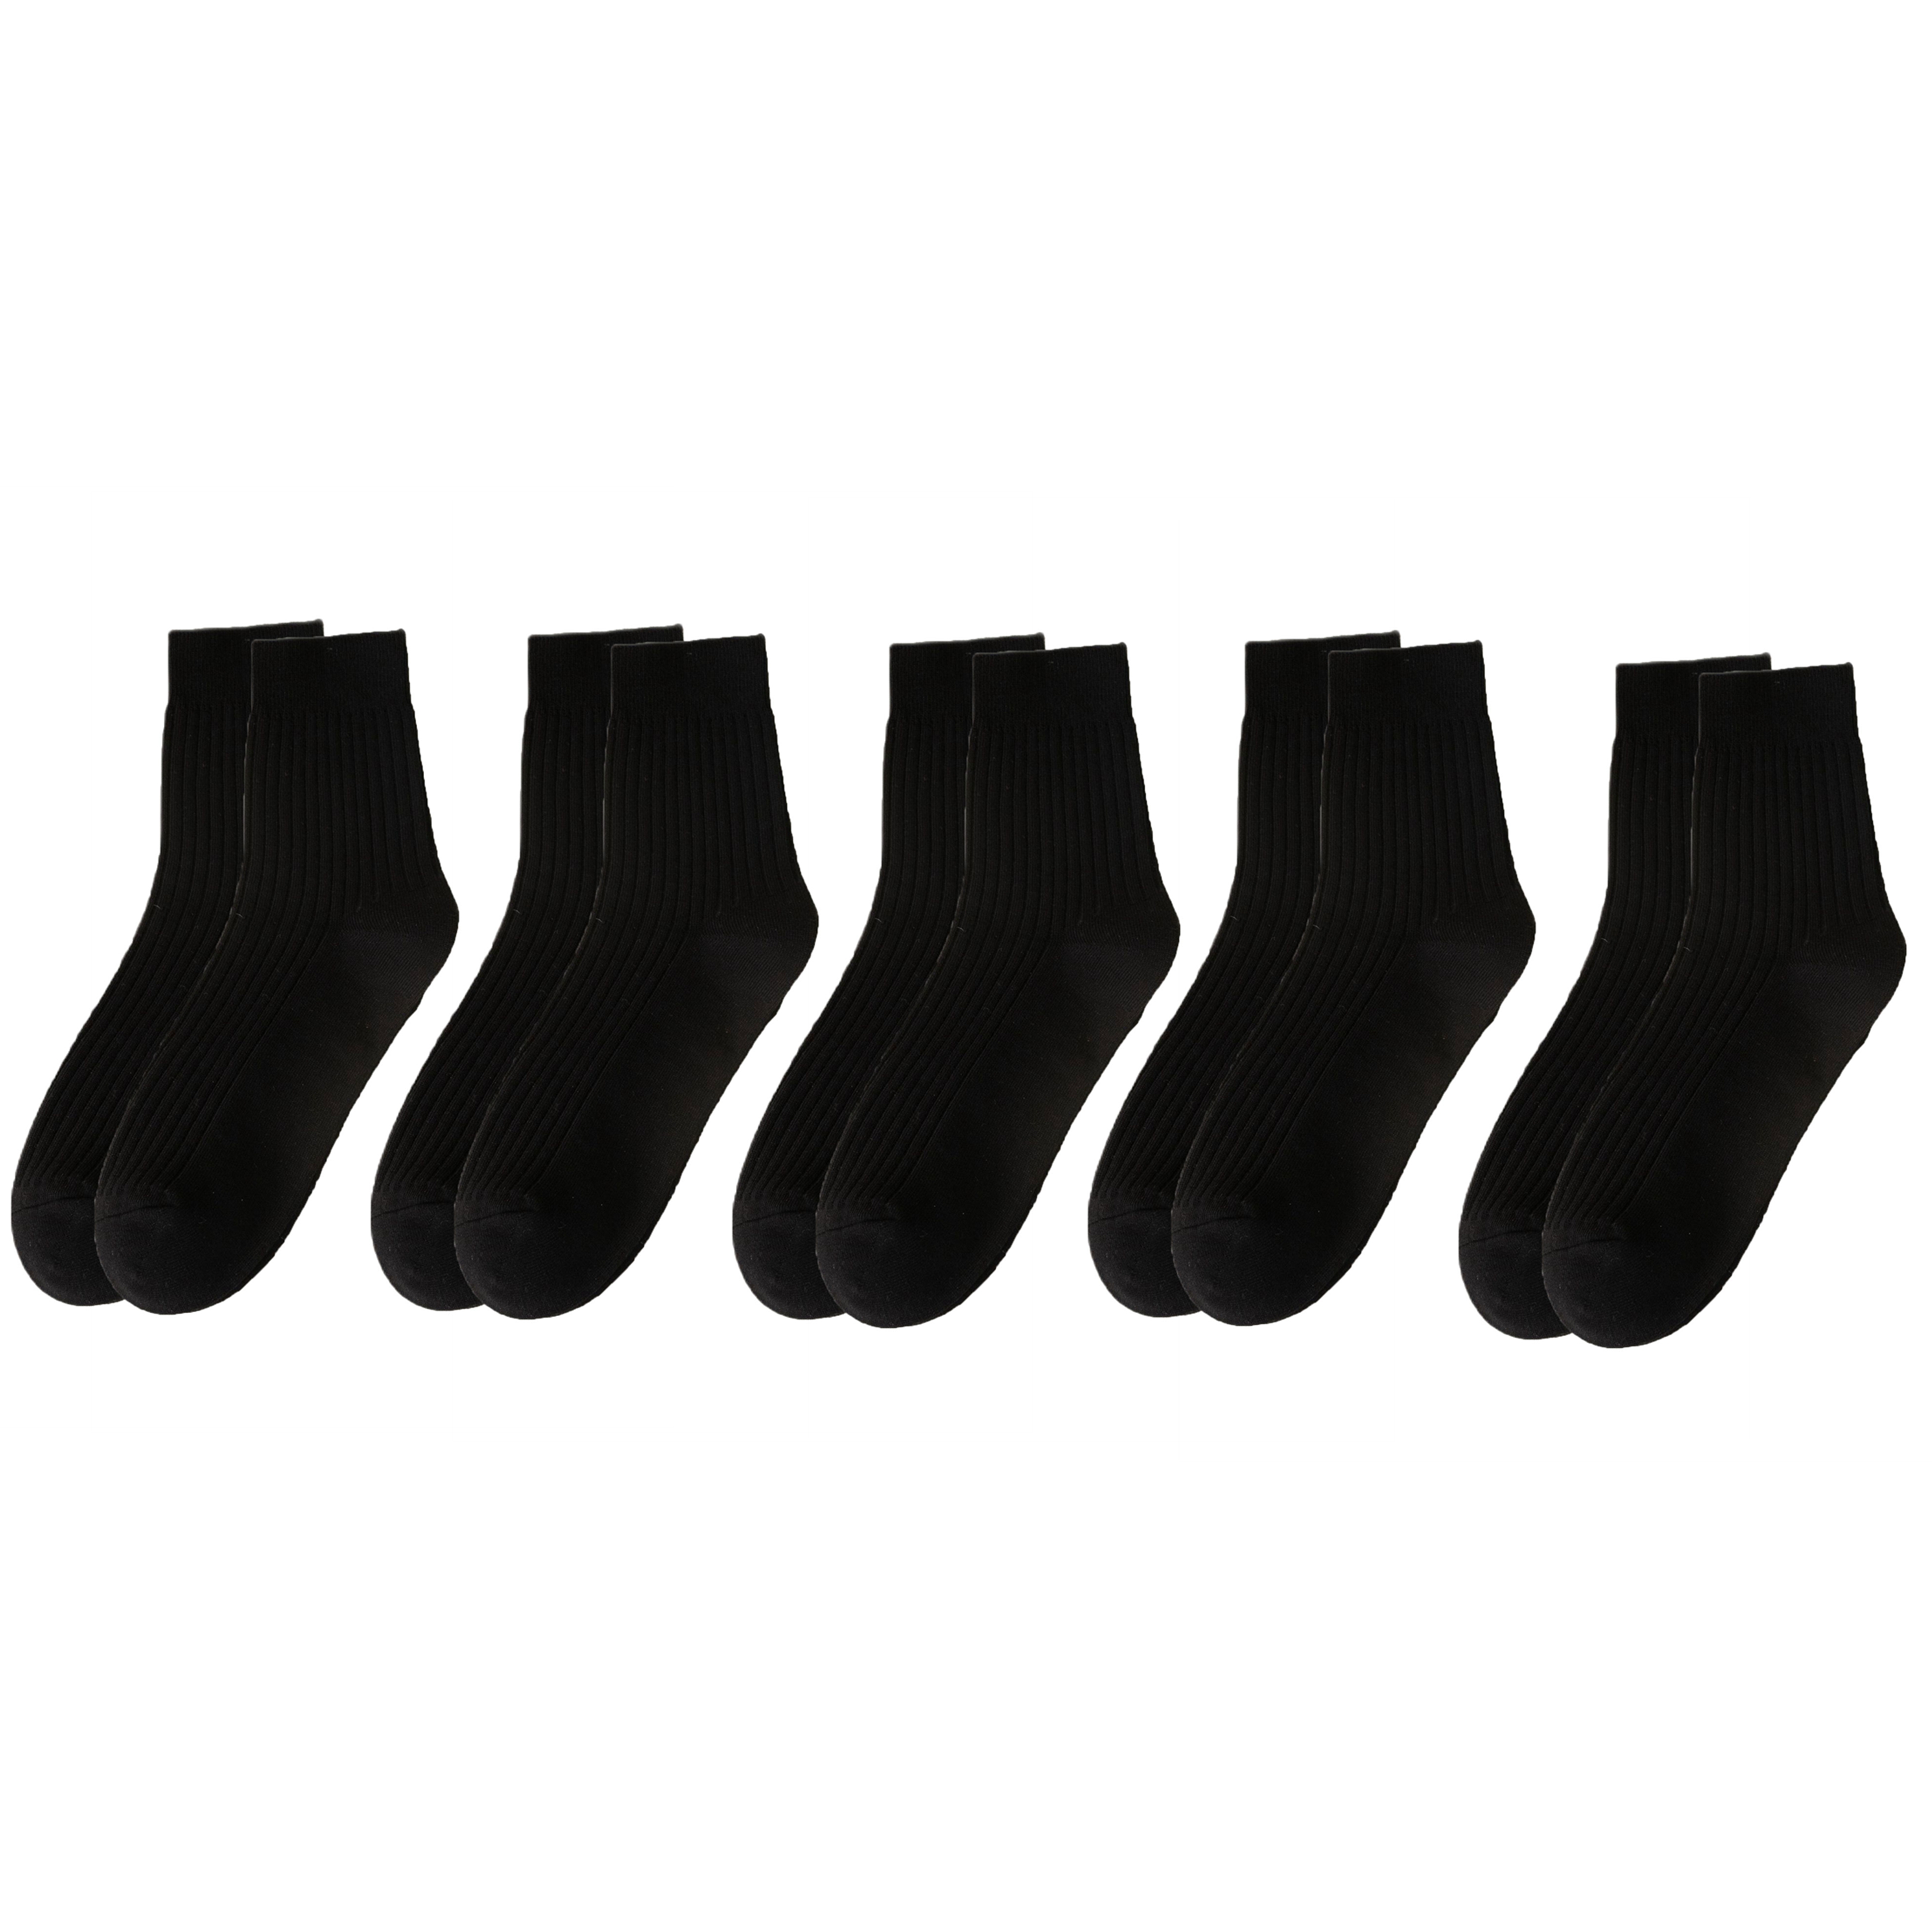 5 Pairs Cotton Socks for Men Black Durable Socks Resistant to Pilling Socks Medium Length